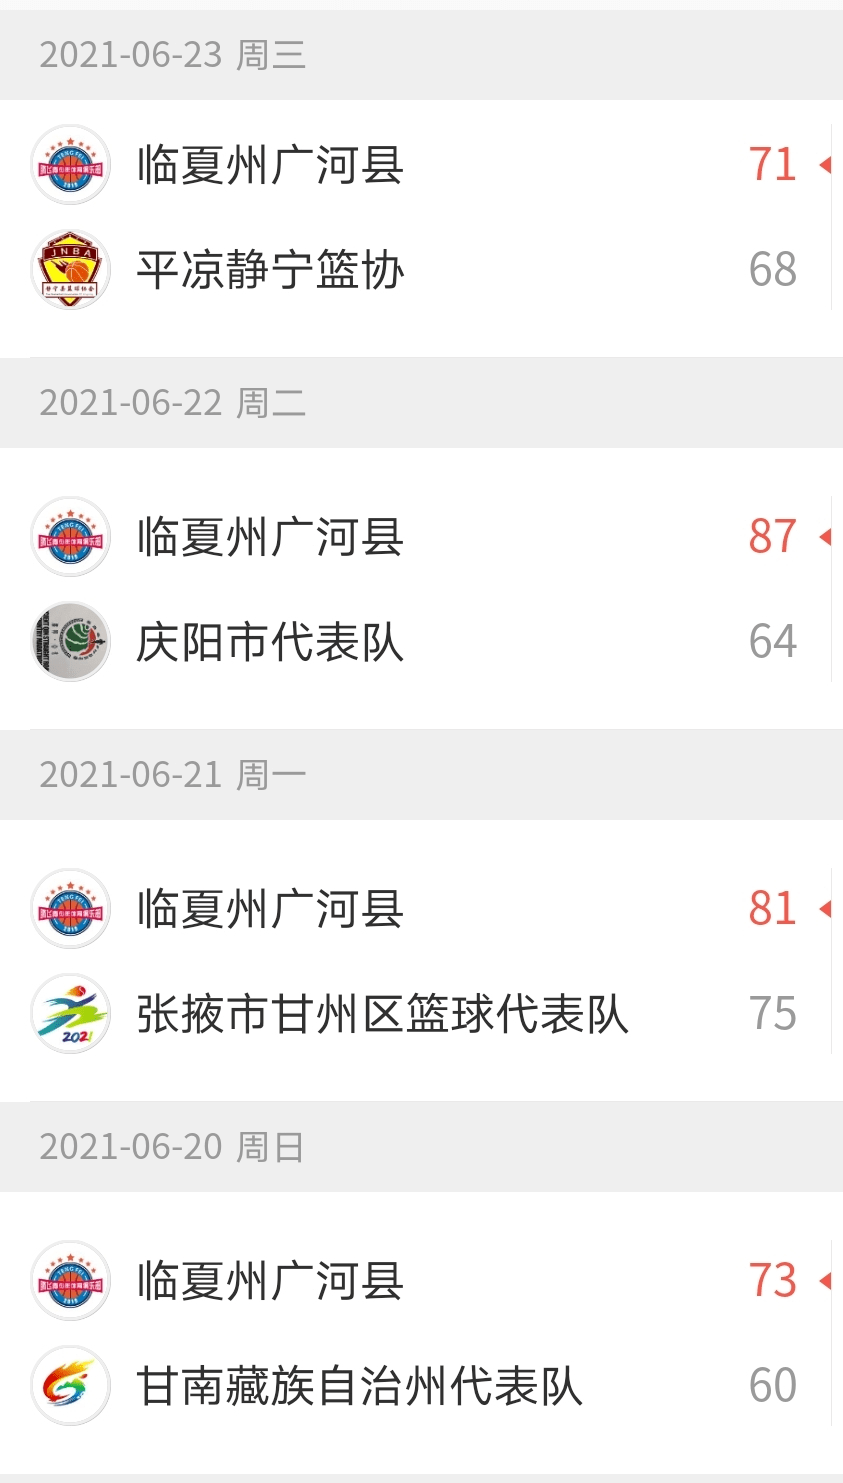 广河县篮球健儿代表临夏州广河县出征本届赛事,队员分别是:马成伟,马